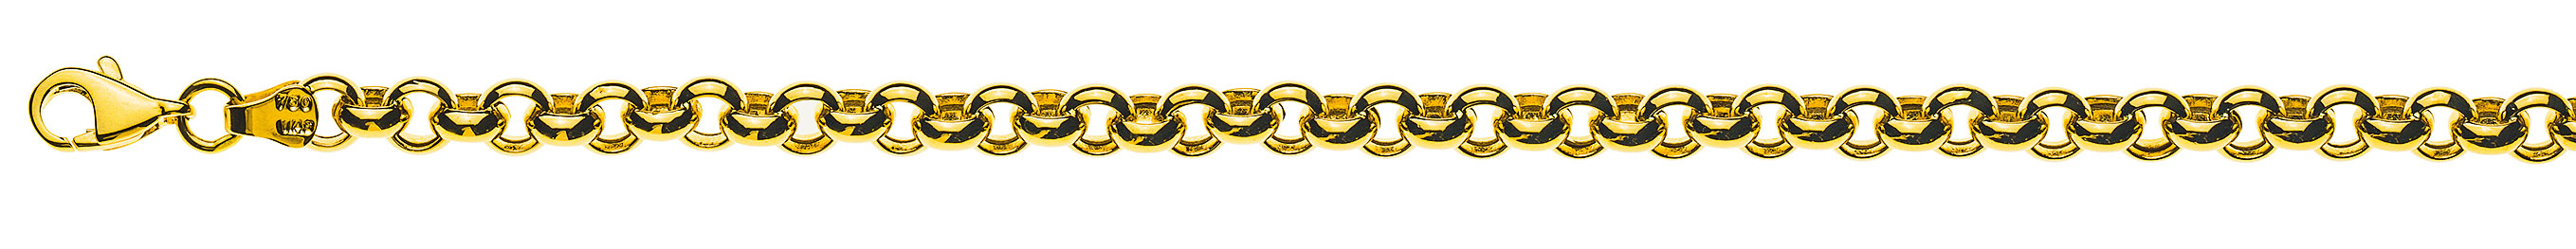 AURONOS Prestige Necklace yellow gold 18K semi-solid pea chain 50cm 5mm